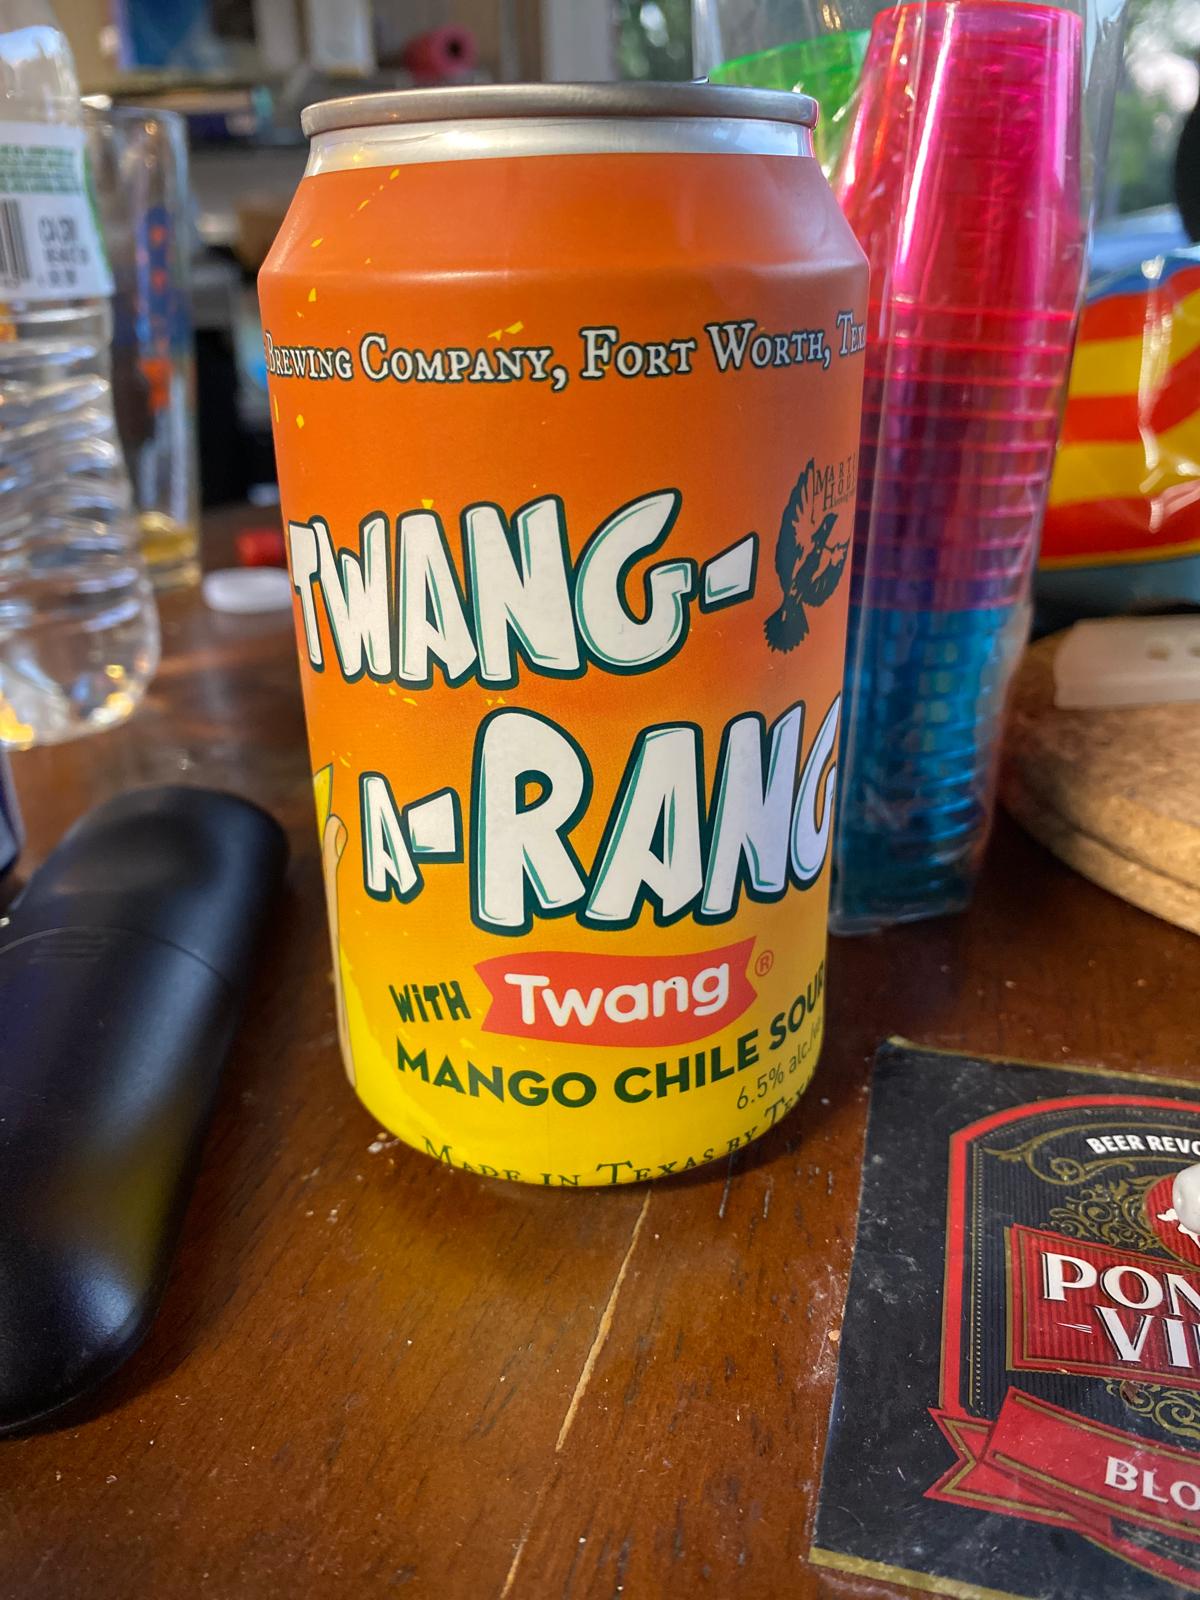 Twang-A-Rang: Mango Chile